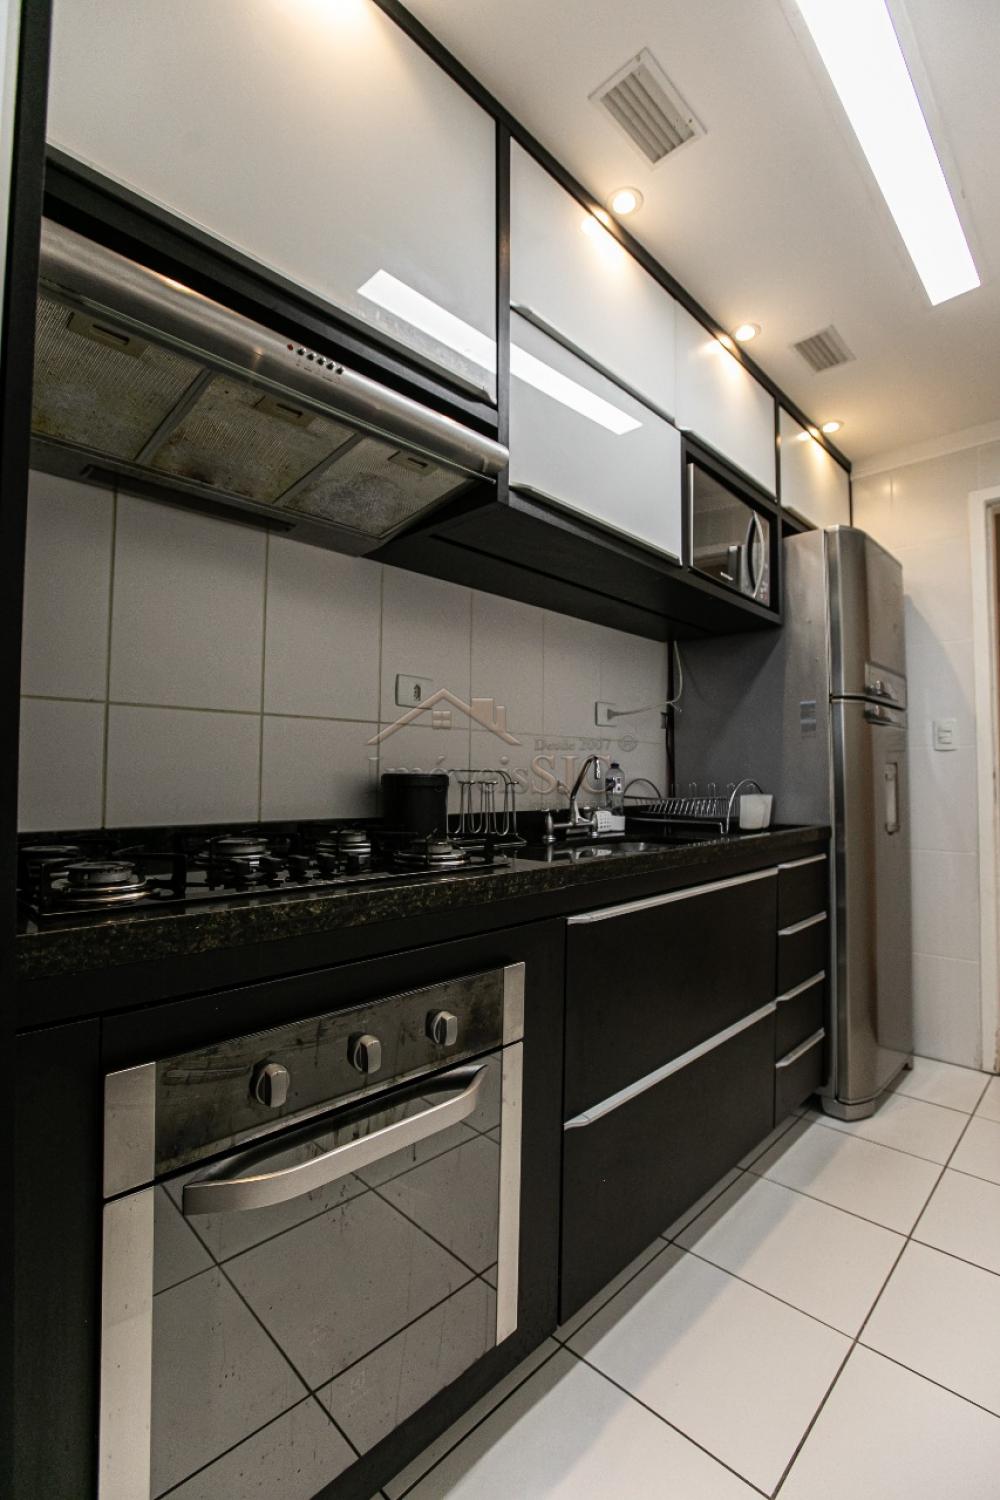 Comprar Apartamentos / Padrão em São José dos Campos R$ 890.000,00 - Foto 27